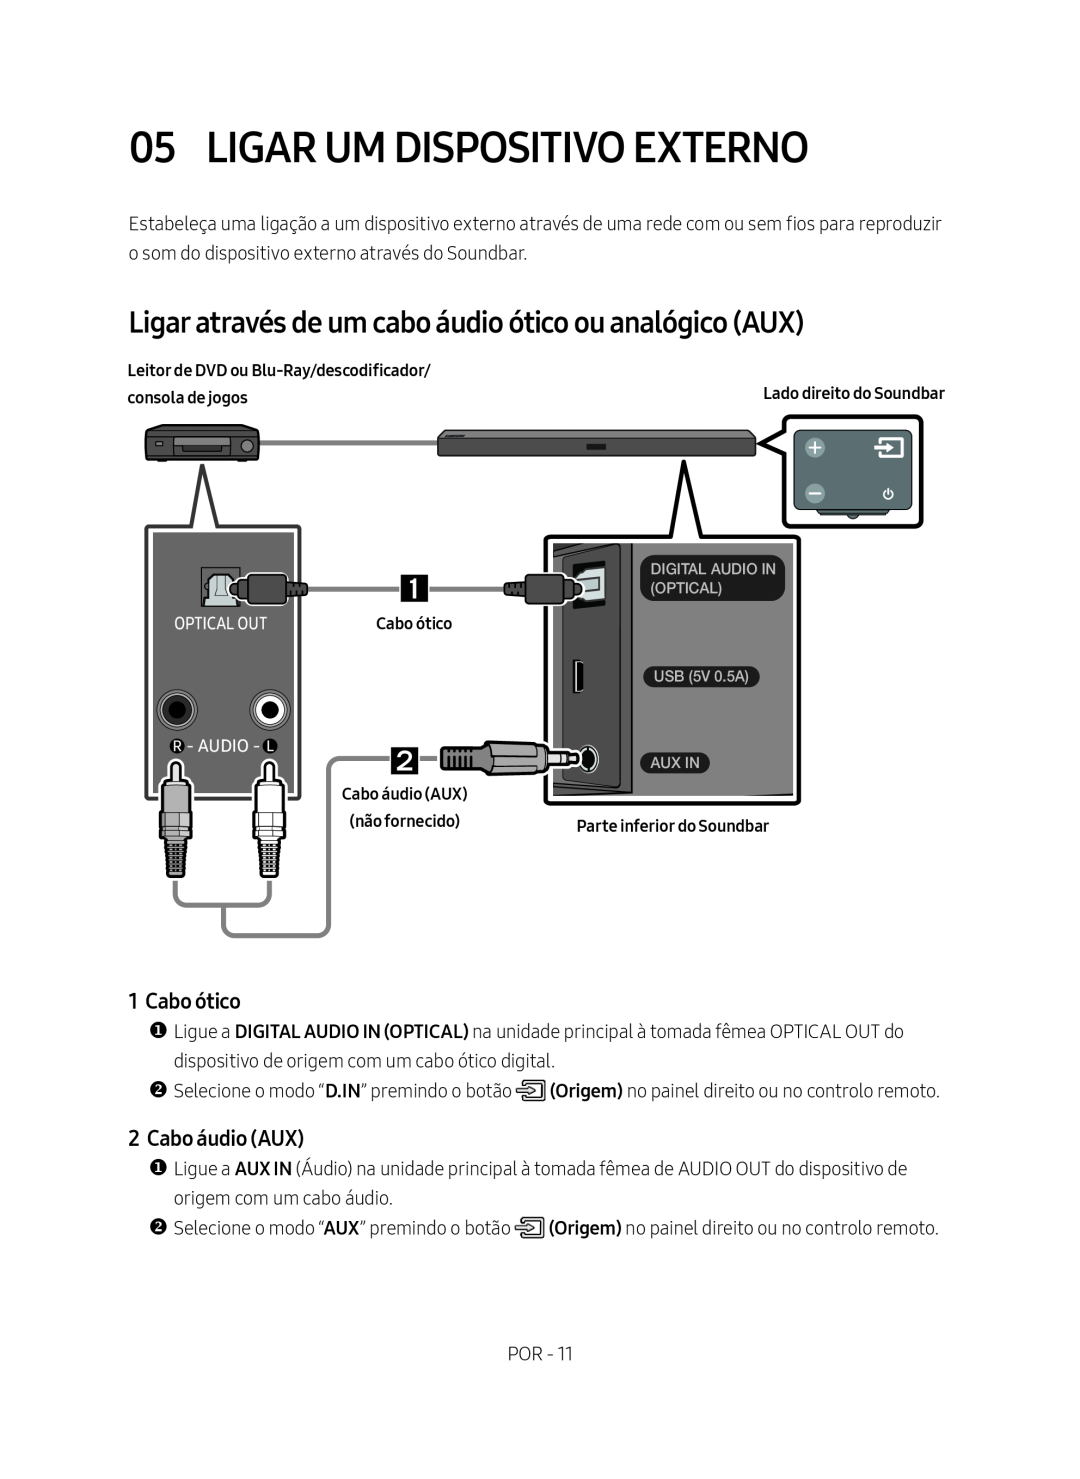 Samsung HW-M450/EN manual Ligar Um Dispositivo Externo, Ligar através de um cabo áudio ótico ou analógico AUX, Cabo ótico 